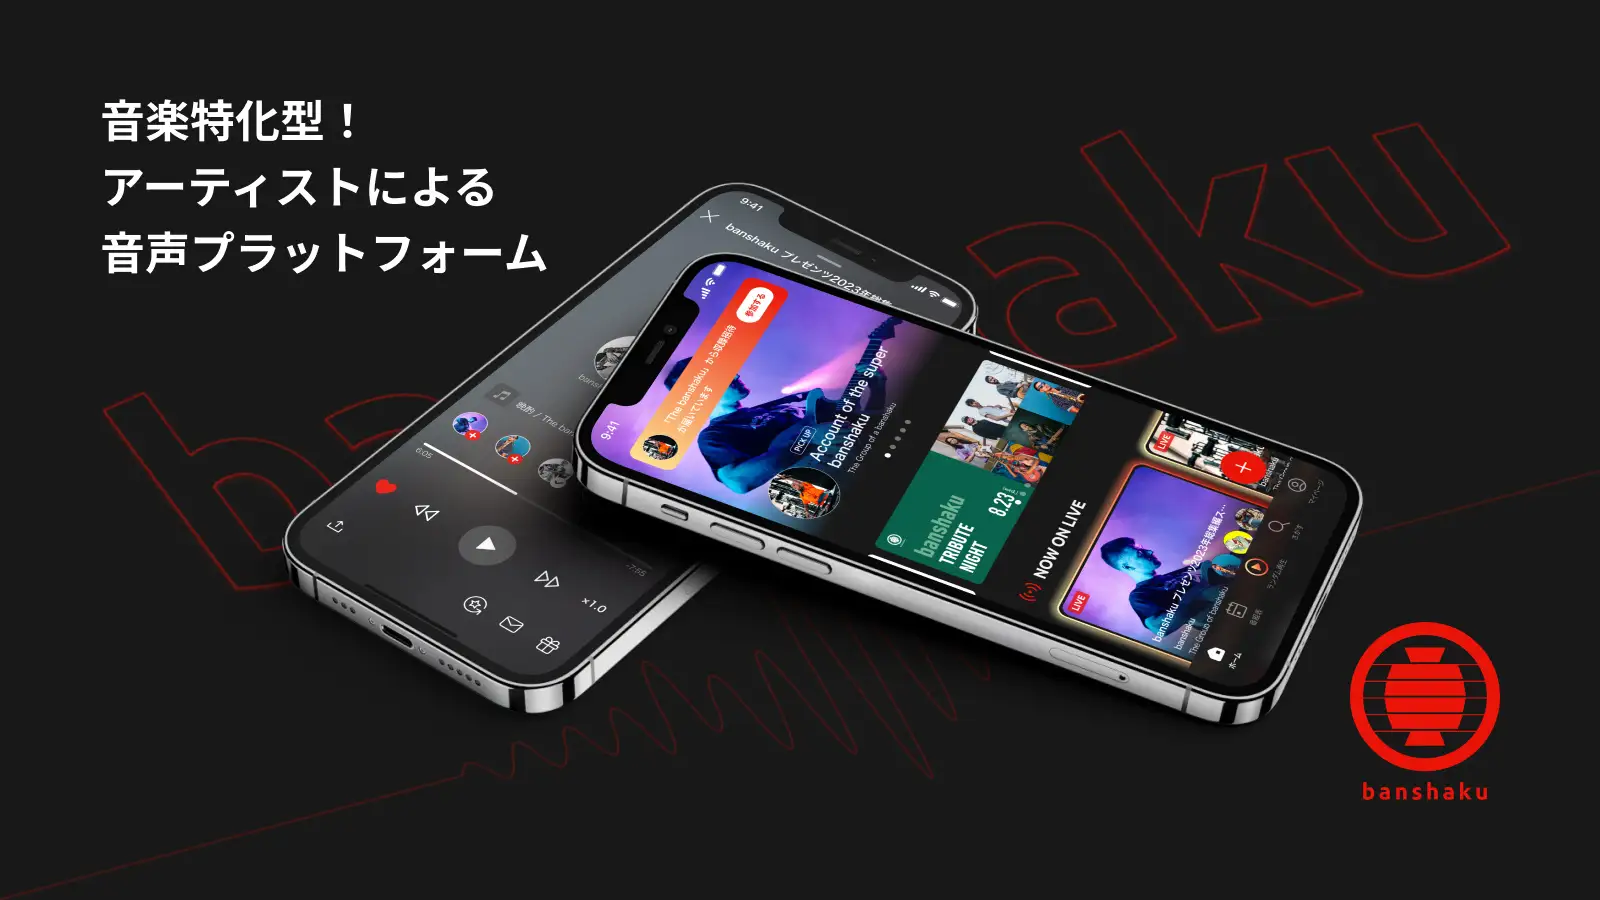 音楽特化型の音声配信プラットフォーム「banshaku」がAndroid版をリリース